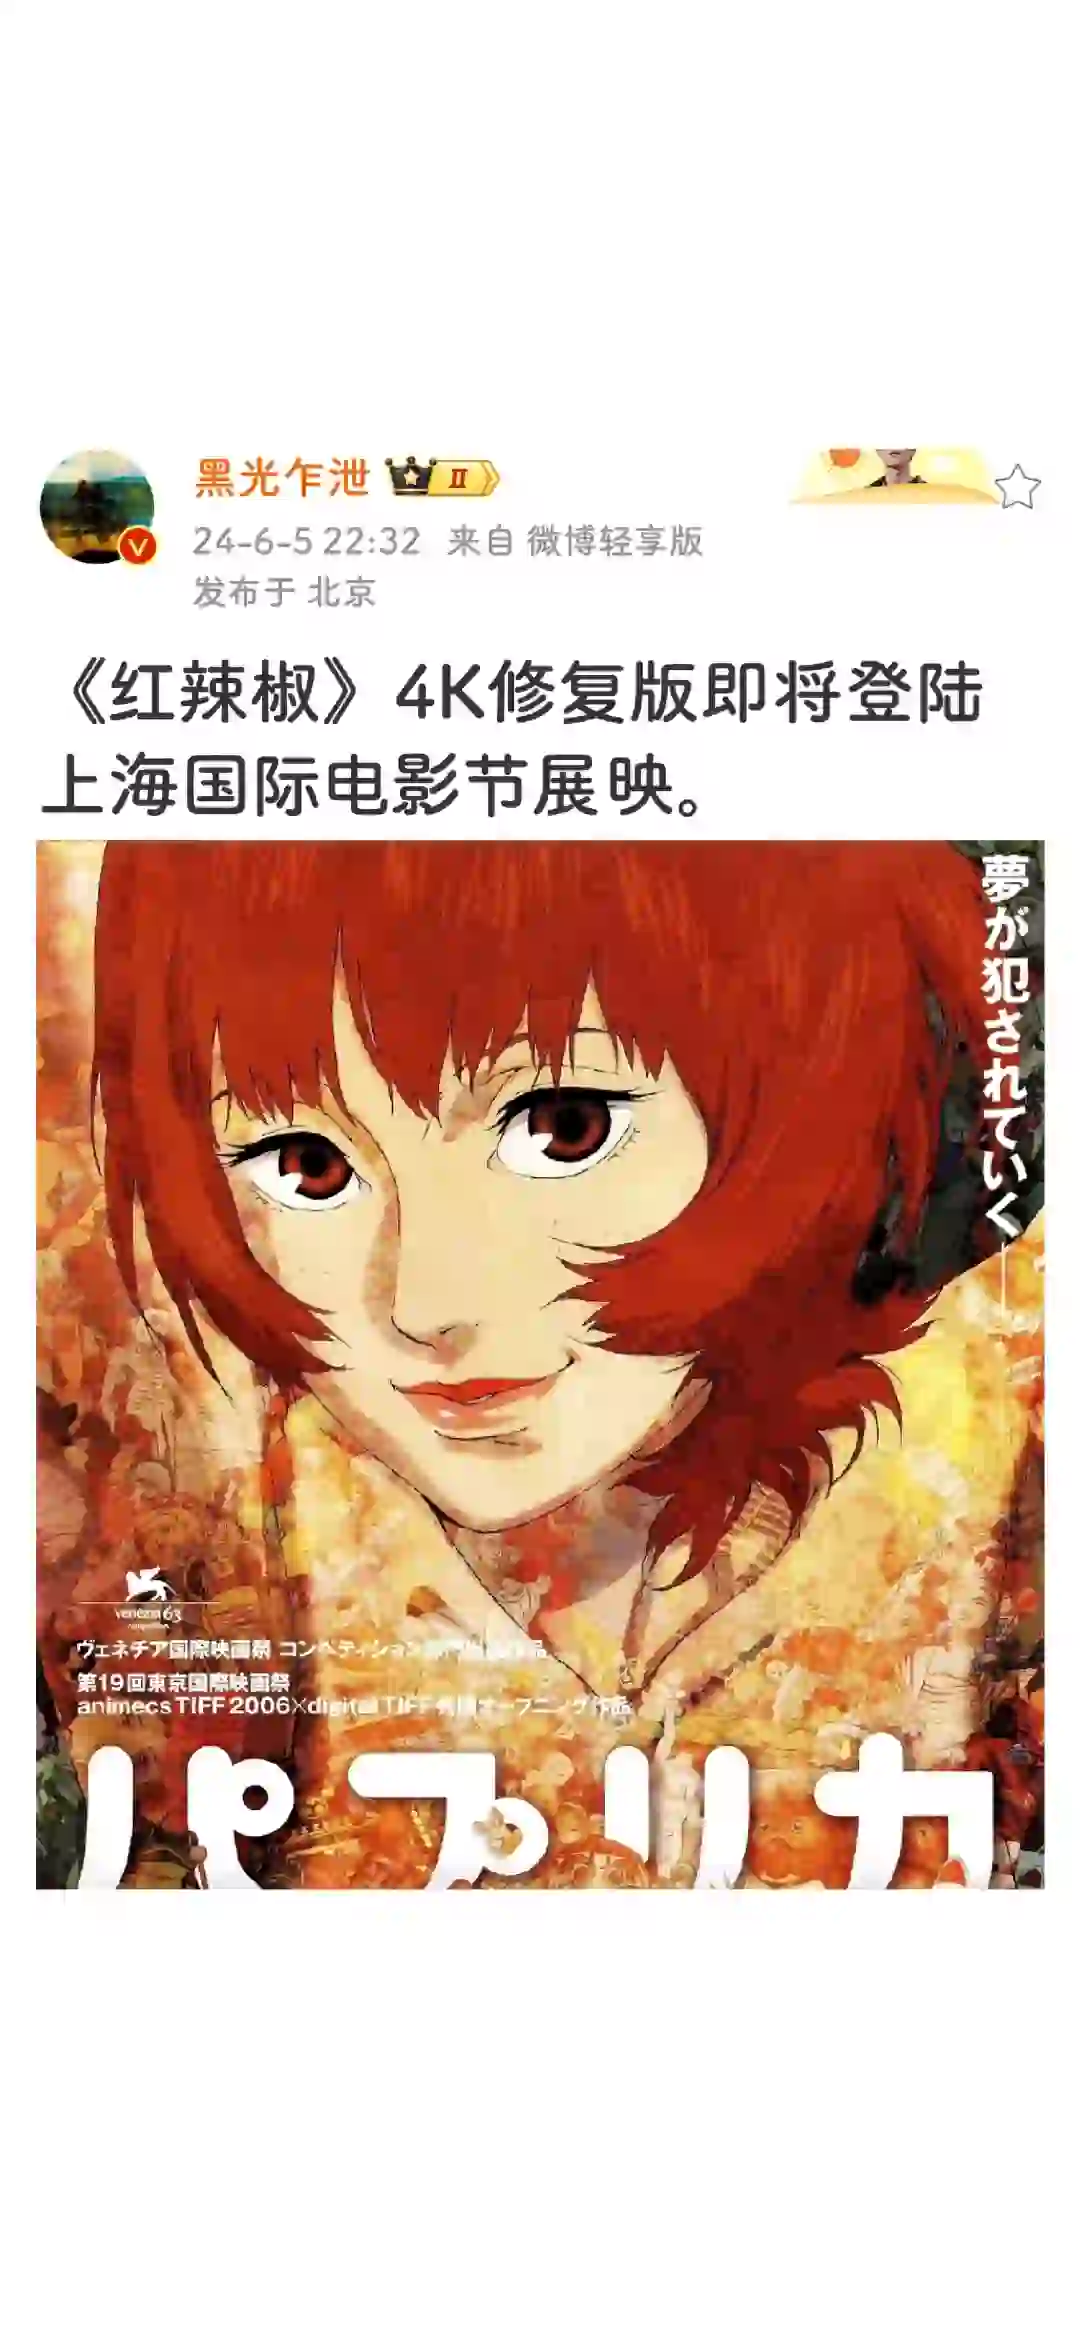 《红辣椒》4K修复版登陆上海国际电影节展映